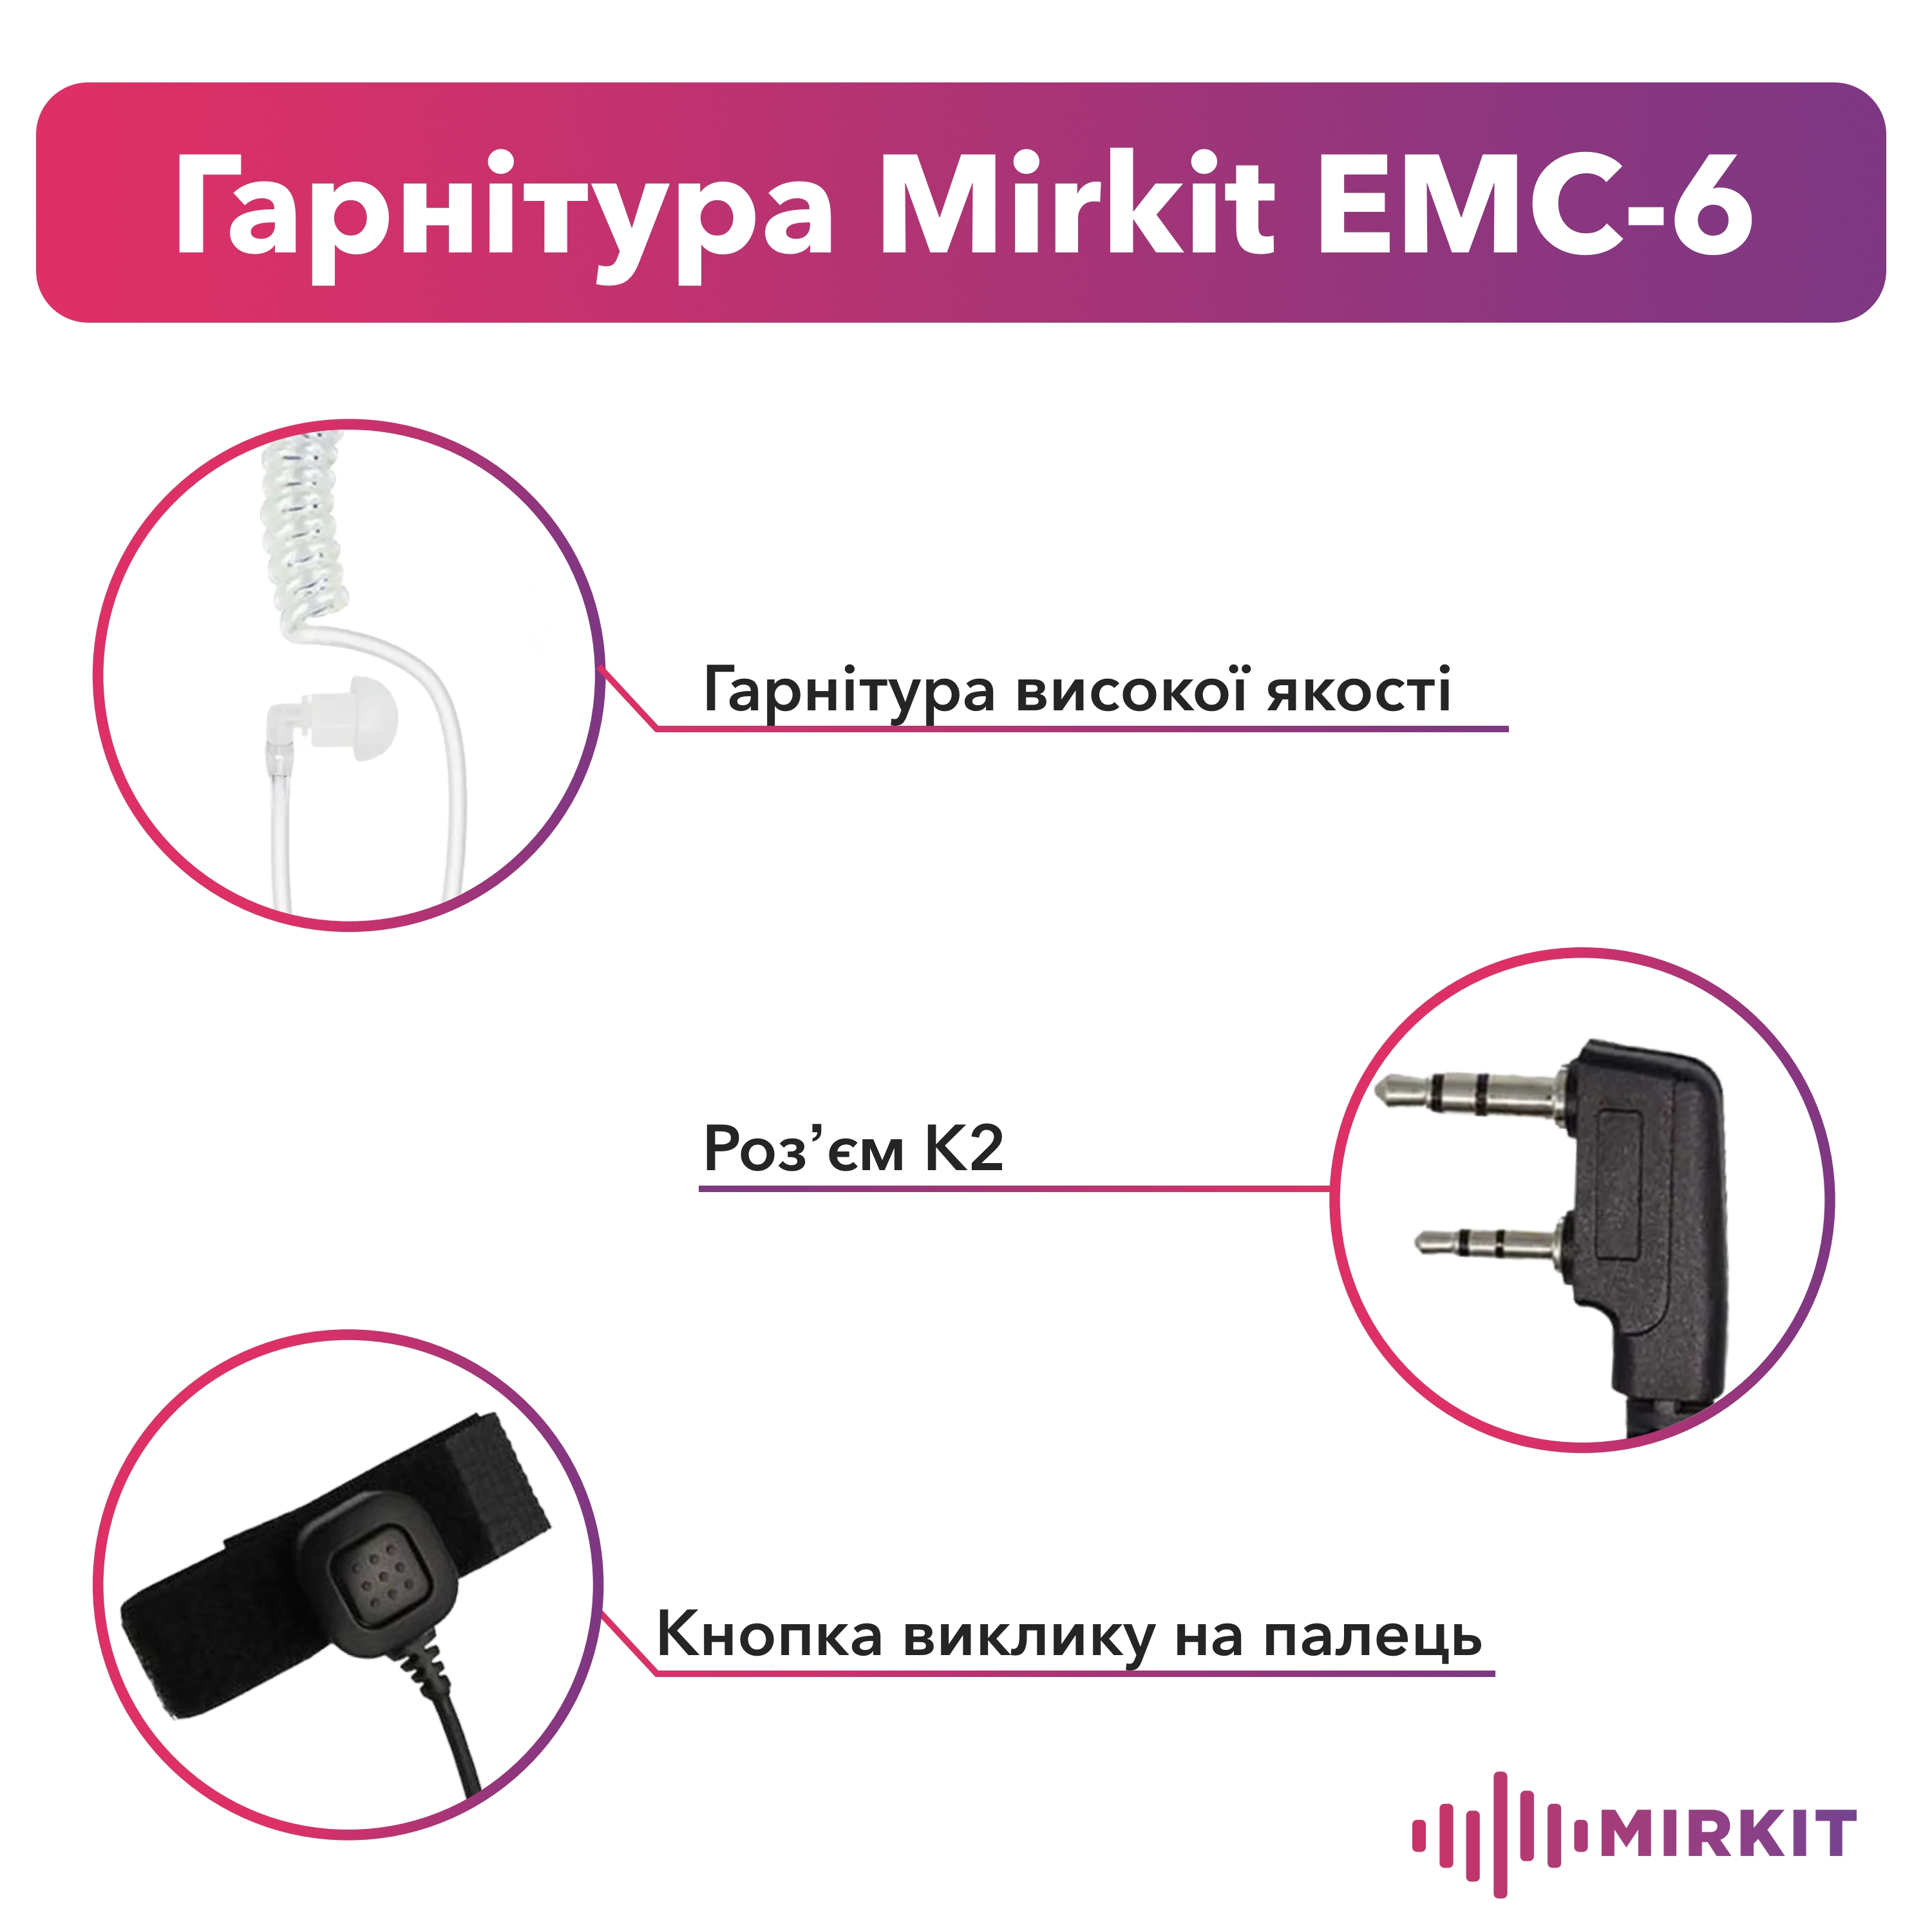 Гарнітура прихованого носіння Mirkit EMC-6 з виносною кнопкою на палець для рацій з роз'ємом 2 pin (Baofeng/Kenwood) - фото 2